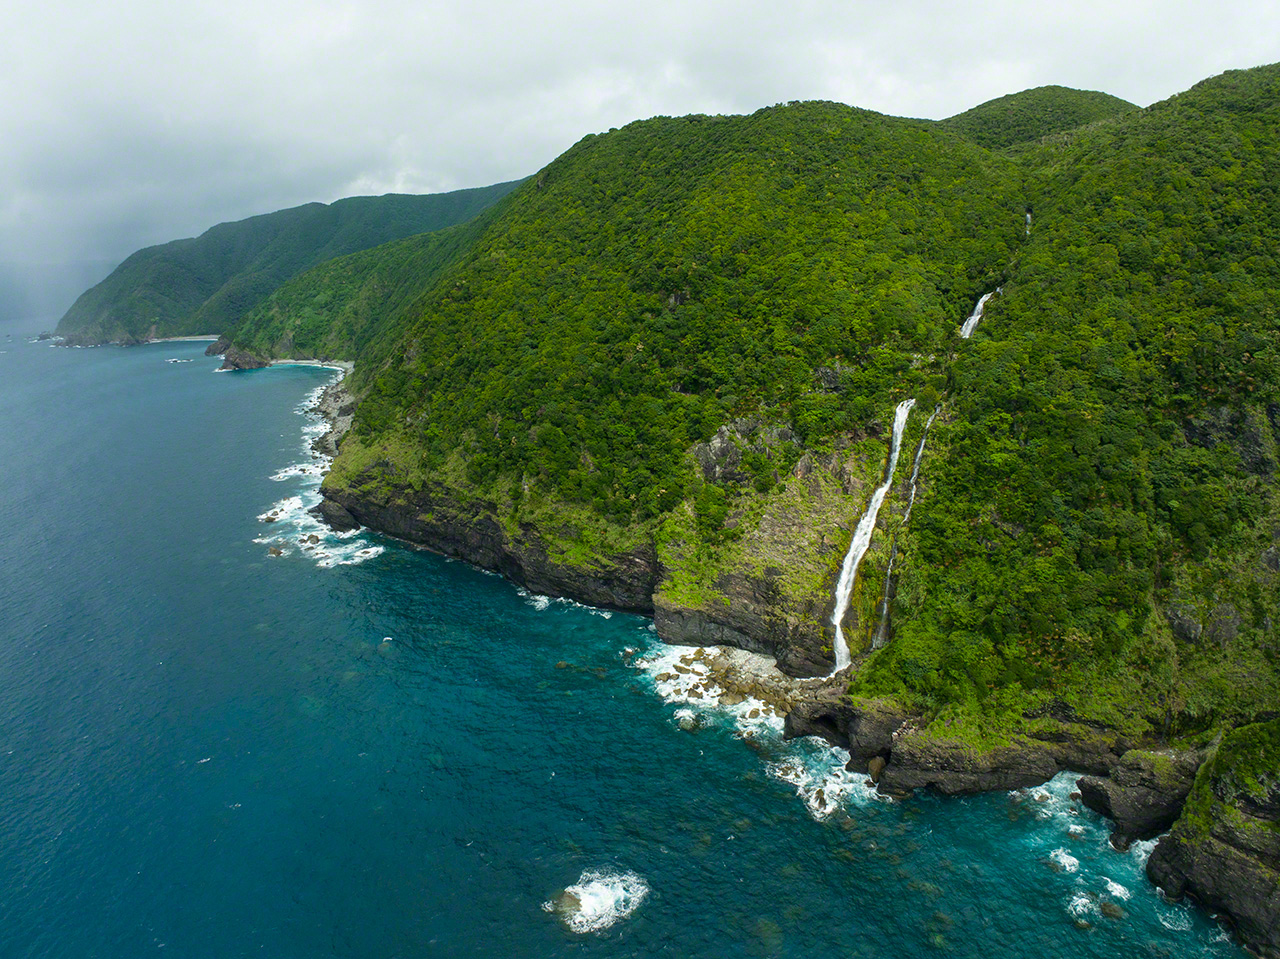 Kurukichi瀑布。落差181m，2021年认定为九州最大瀑布。奄美大岛东部海岸线上有许多断崖绝壁，类似的瀑布分布甚广